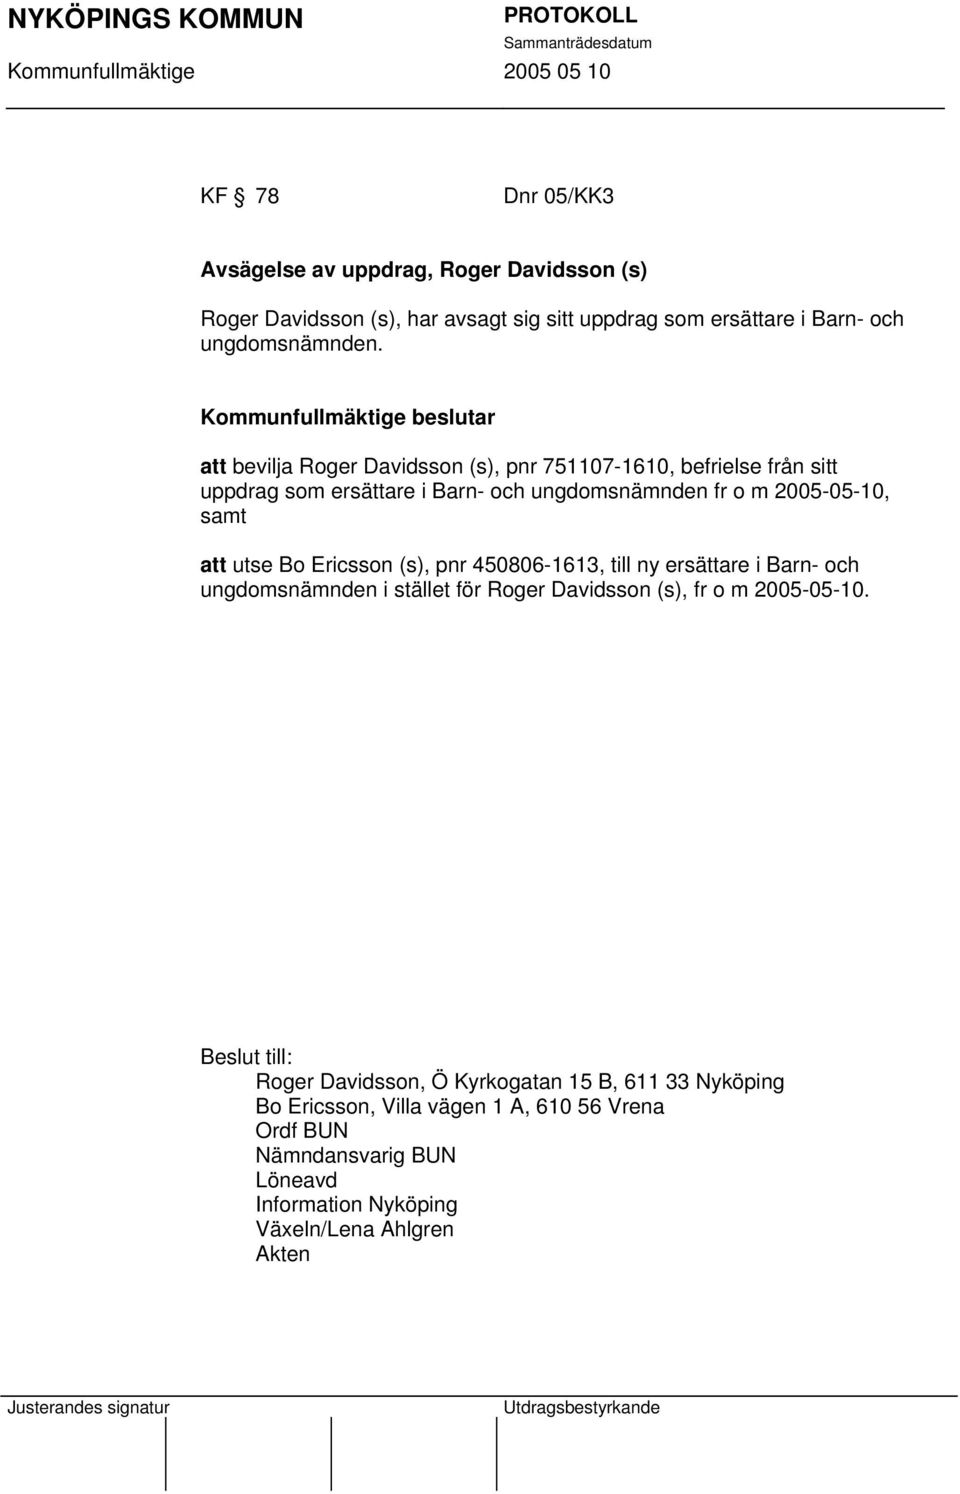 Ericsson (s), pnr 450806-1613, till ny ersättare i Barn- och ungdomsnämnden i stället för Roger Davidsson (s), fr o m 2005-05-10.